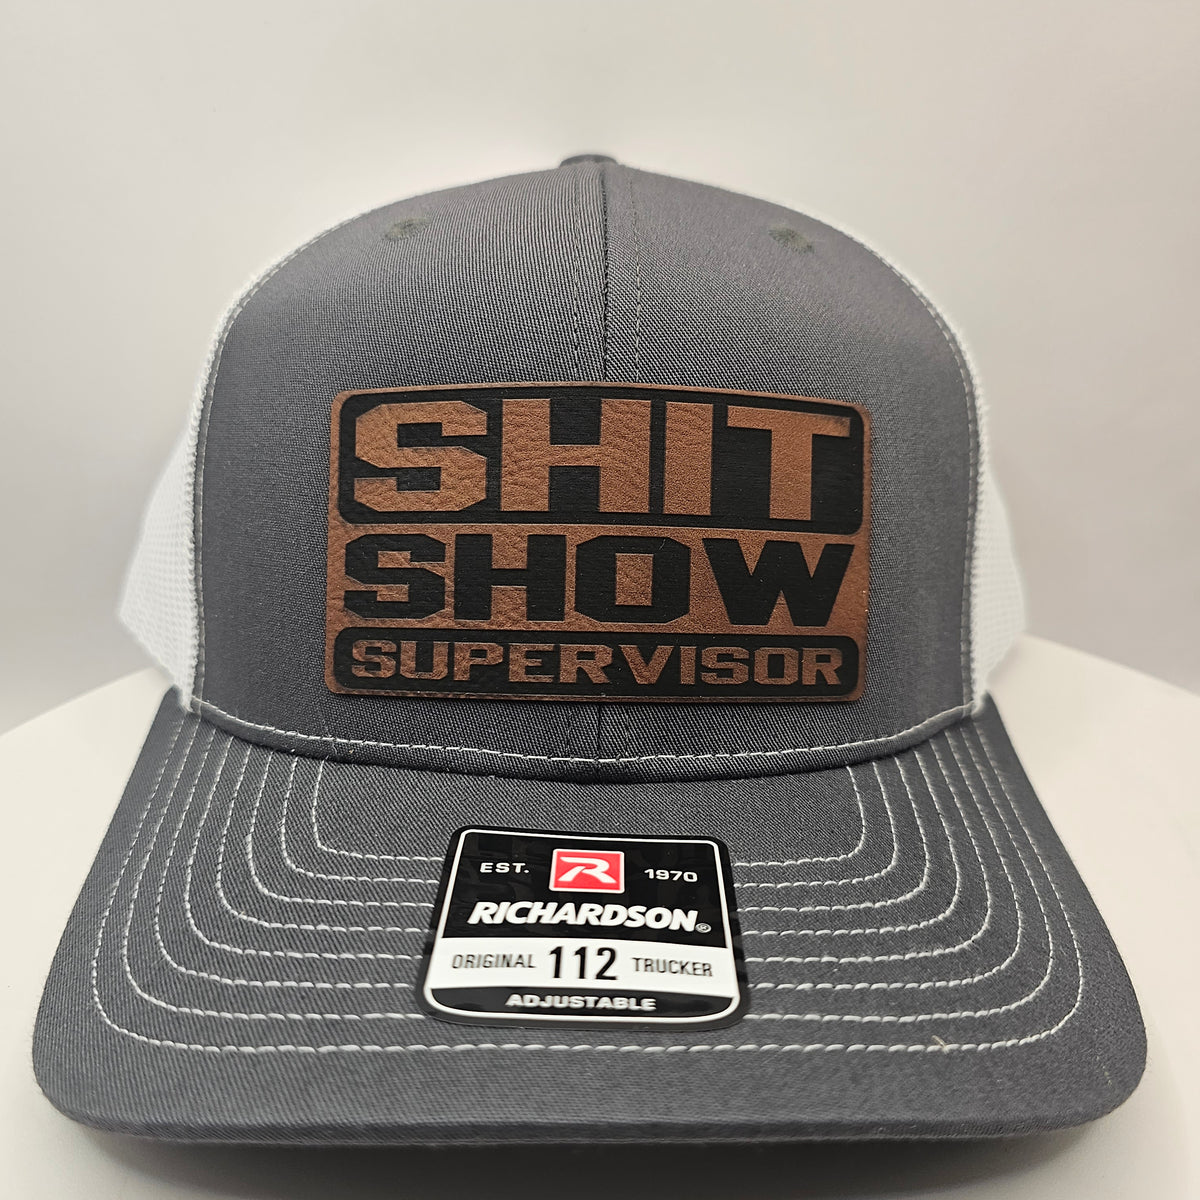 Shit show Supervisor